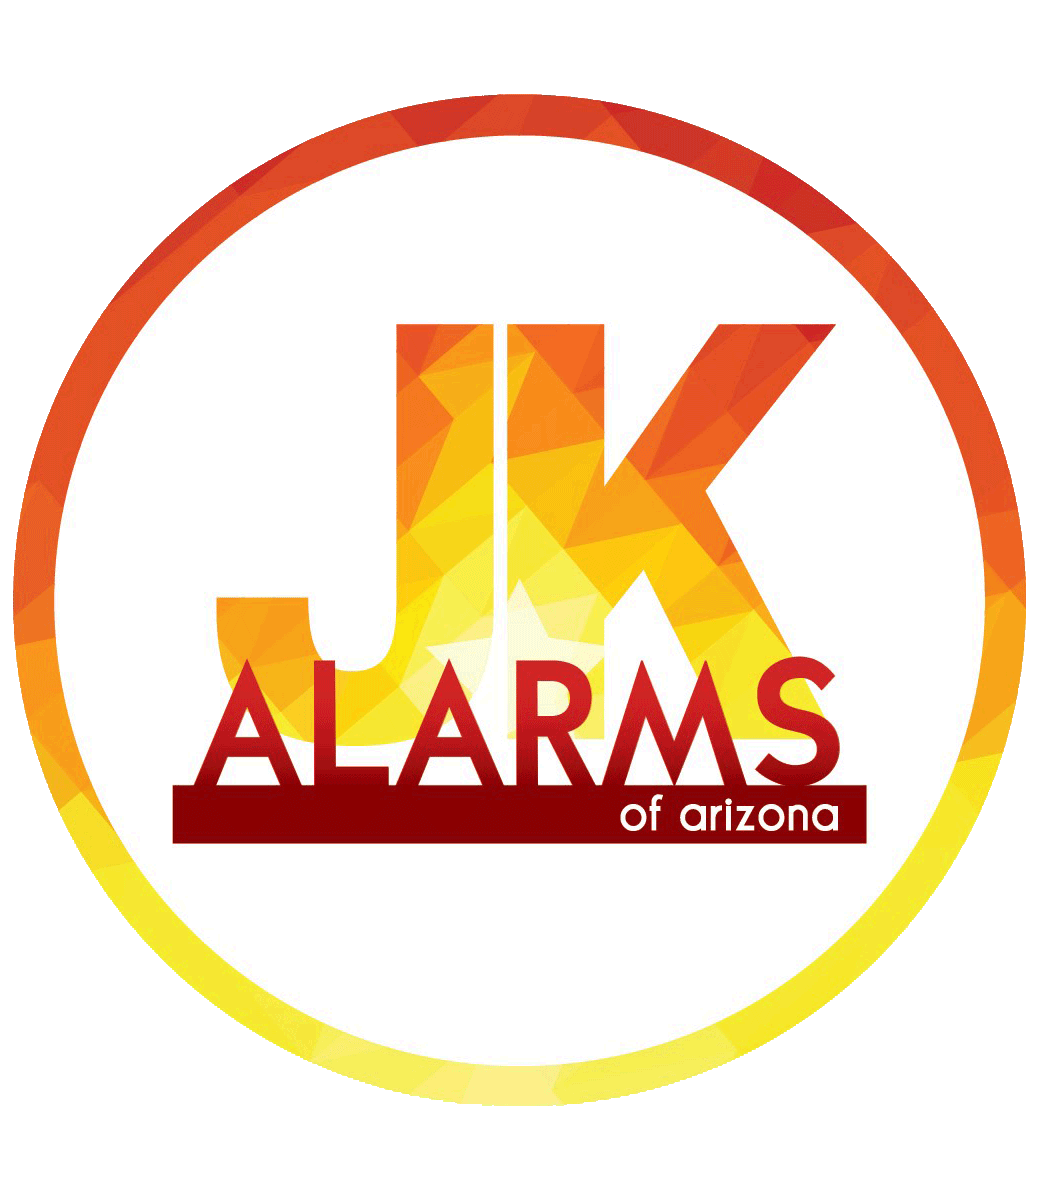 JK Alarms